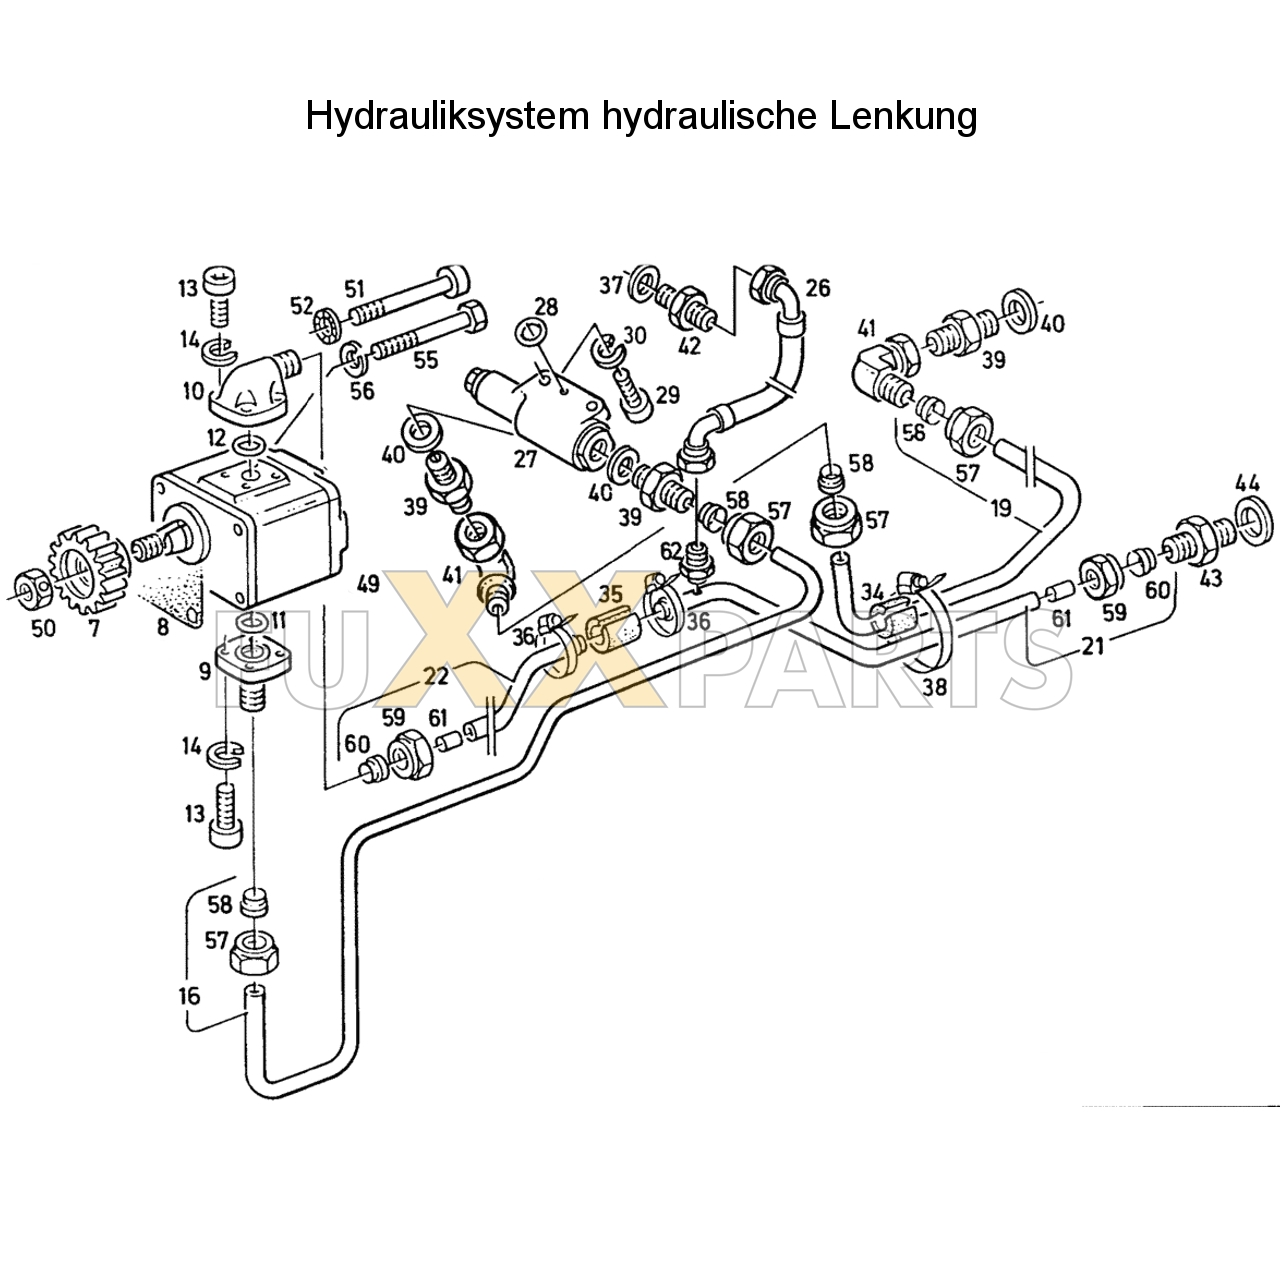 D 4007 Hydrauliksystem hyd. Lenkung